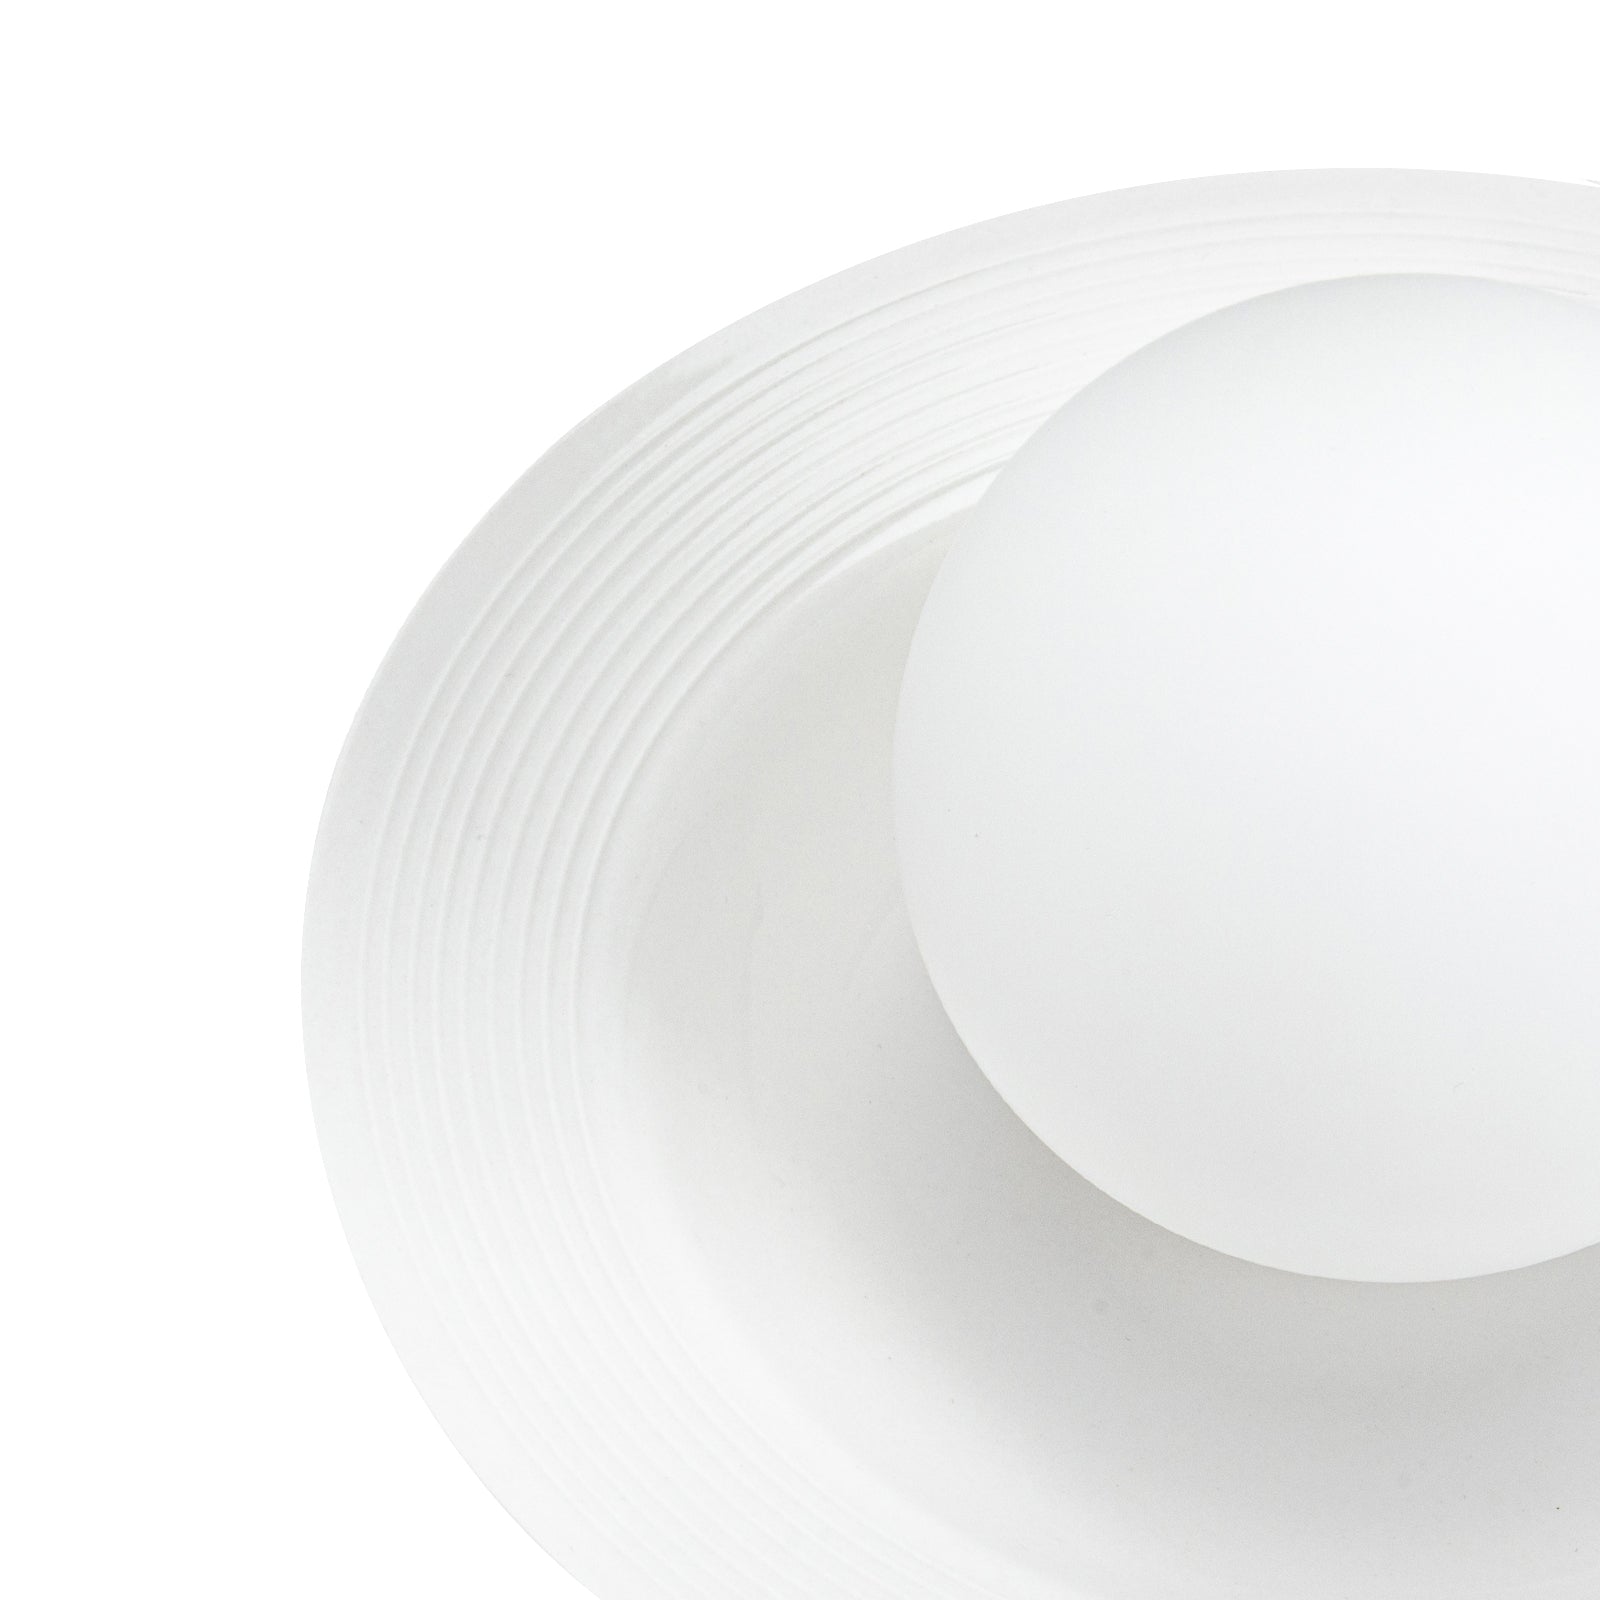 Nordic Dome White Ceramic Wall Light